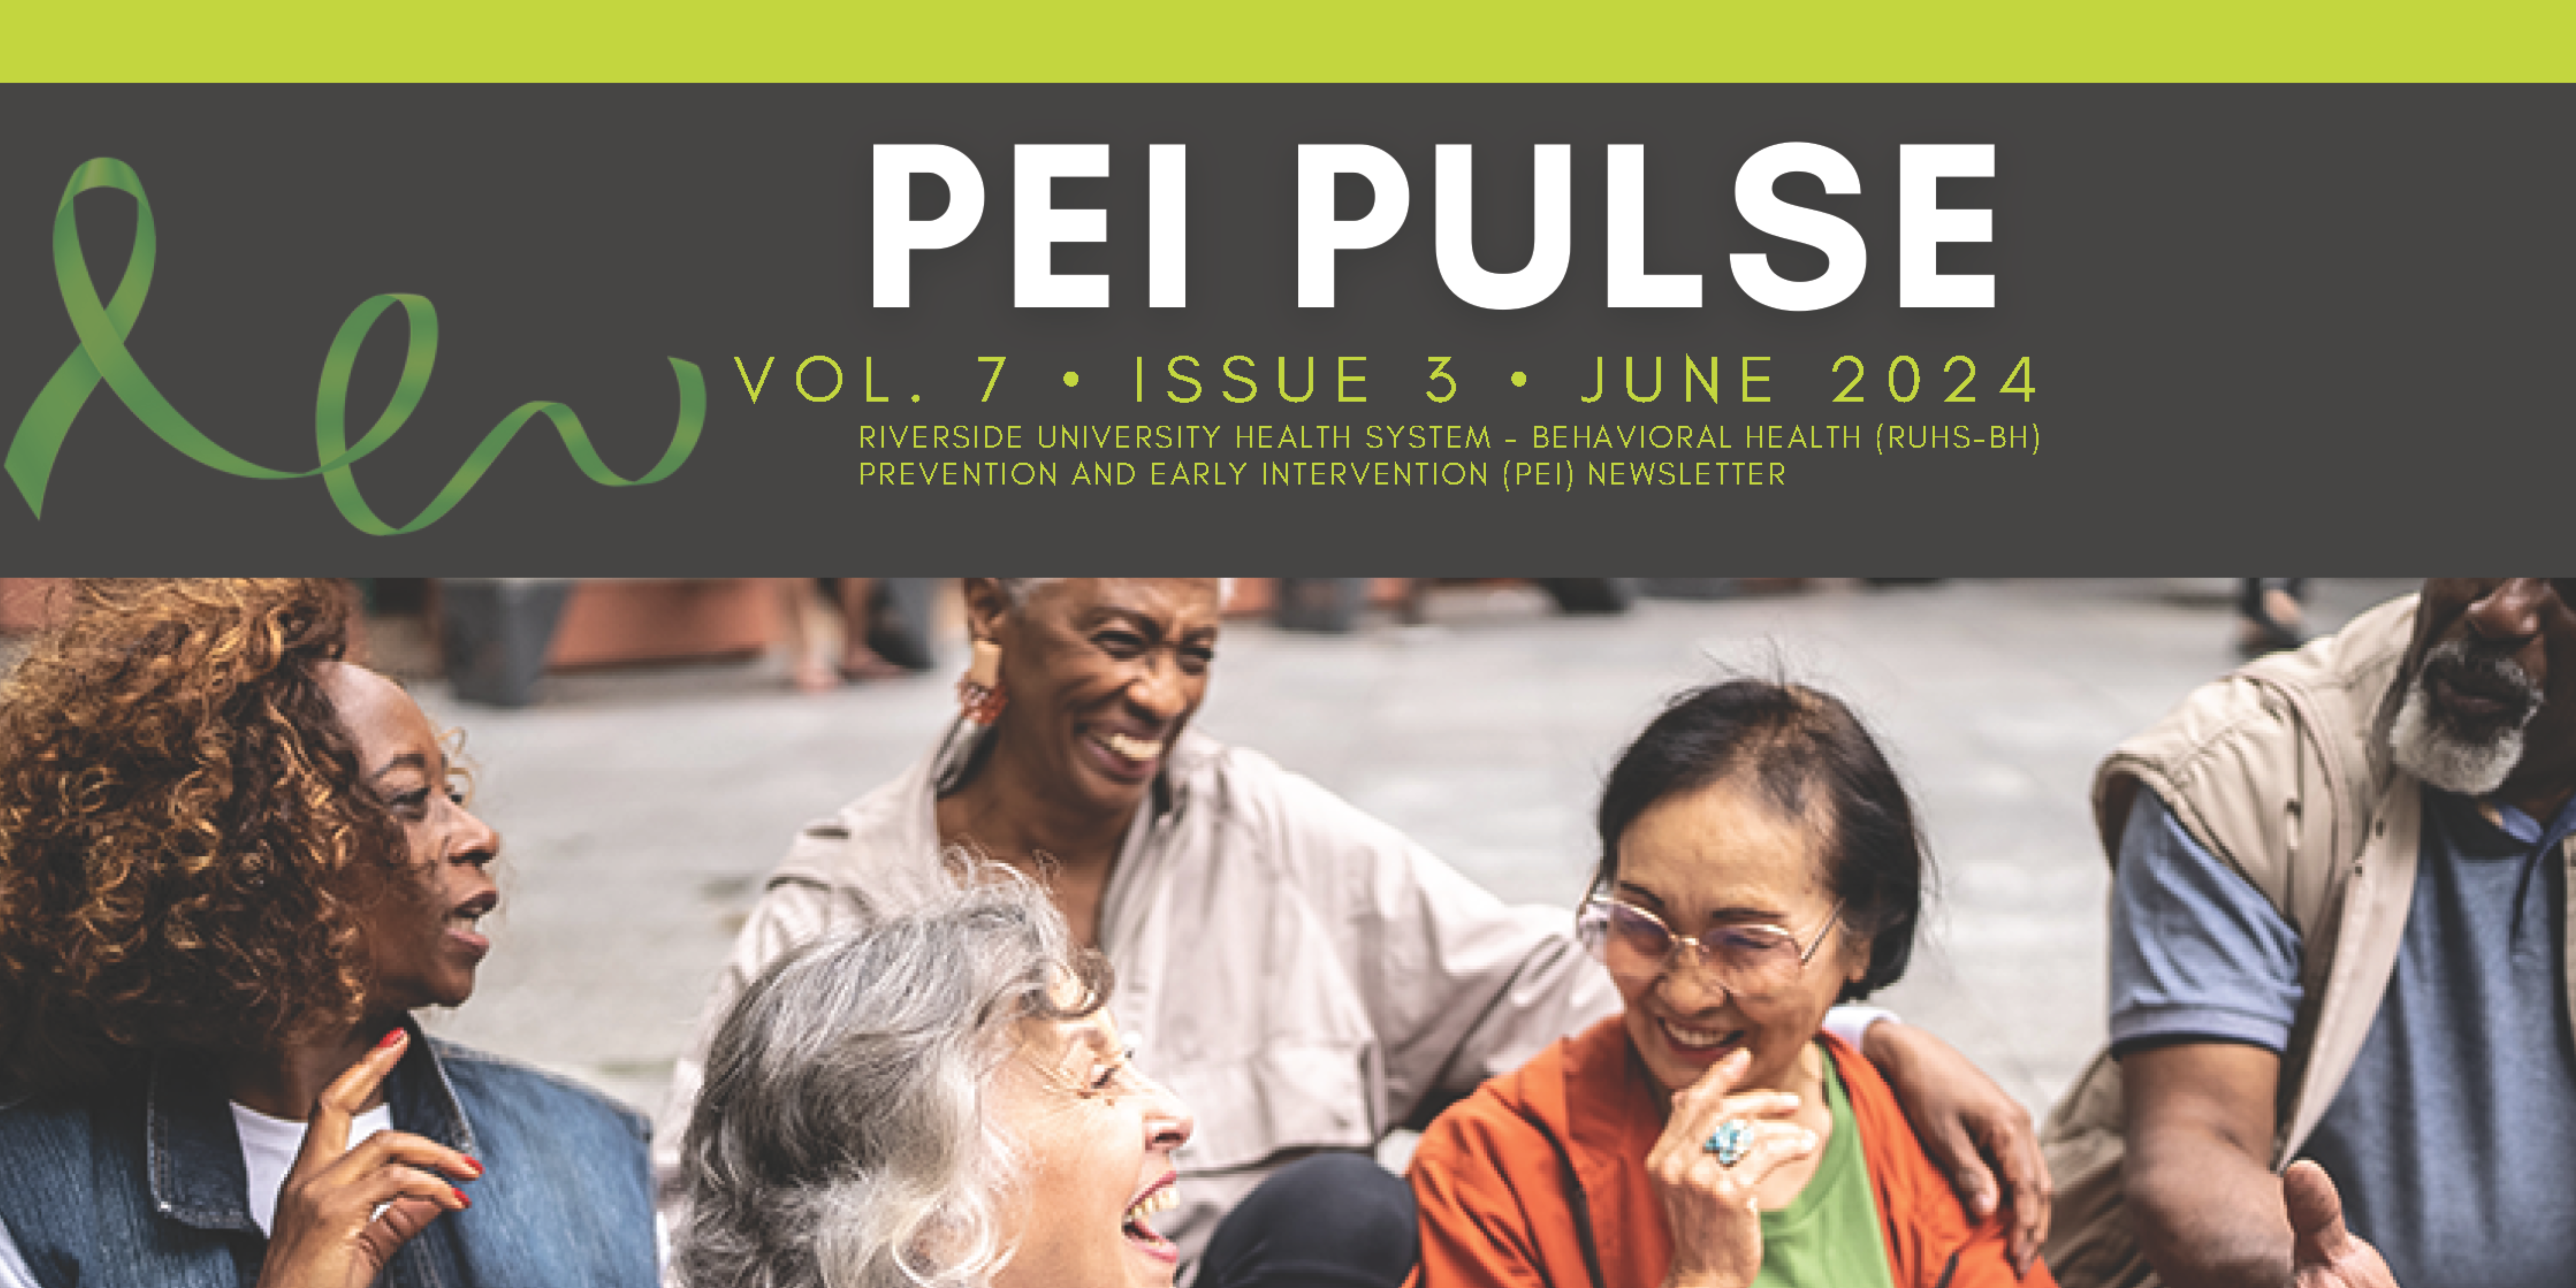 PEI Pulse Newsletter - V O L . 7 • I S S U E 3 • JUNE 2024